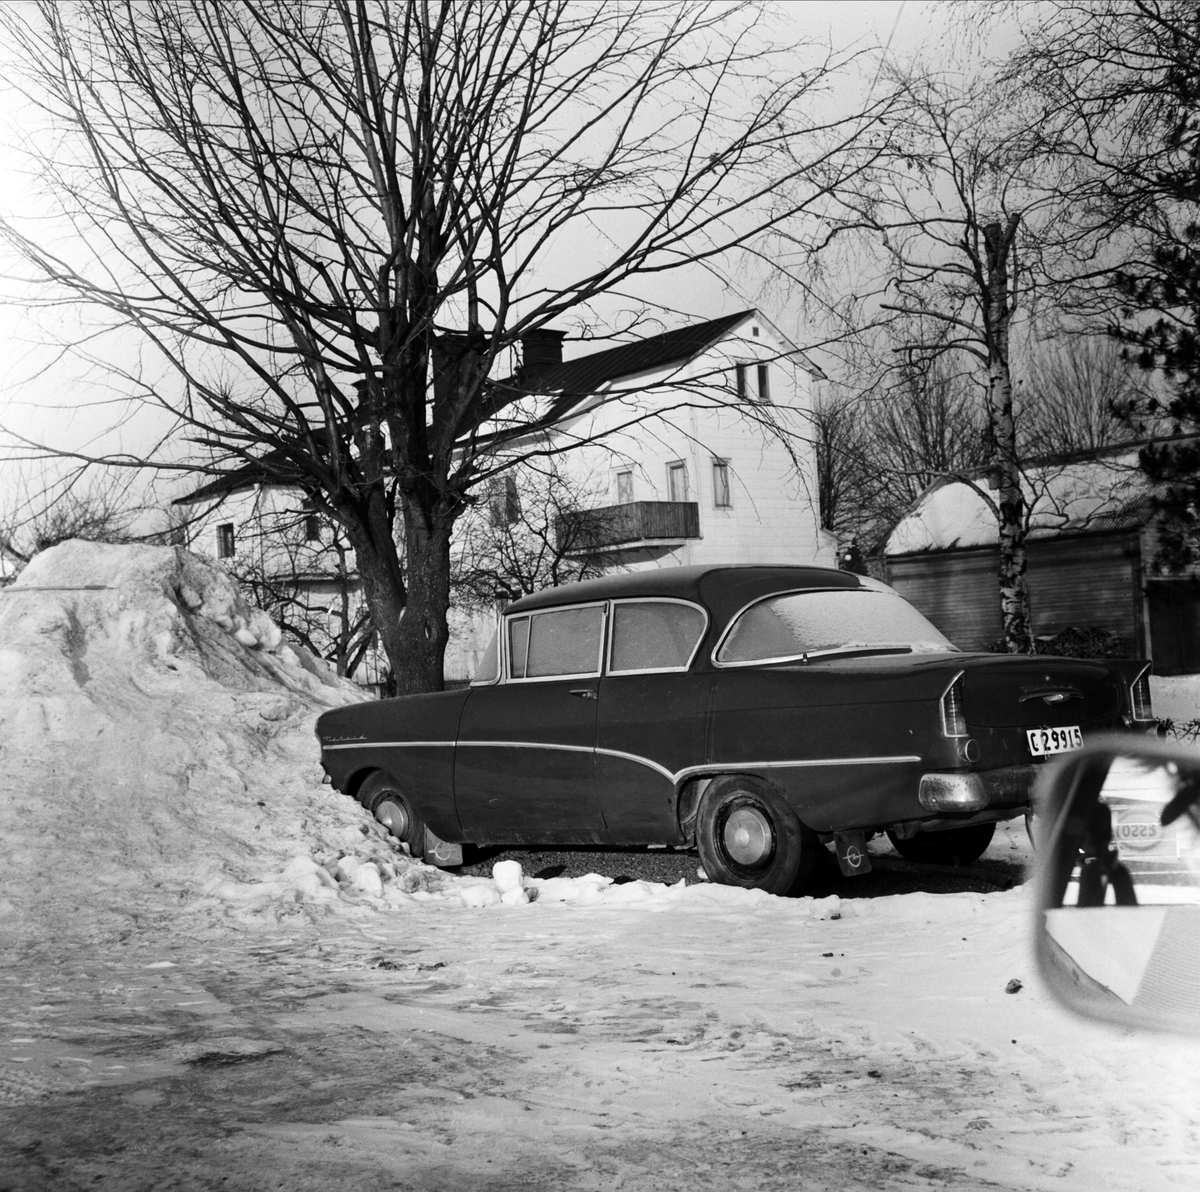 Långtidsparkering bekymrar Tierpsbor, Tierp, Uppland november 1973